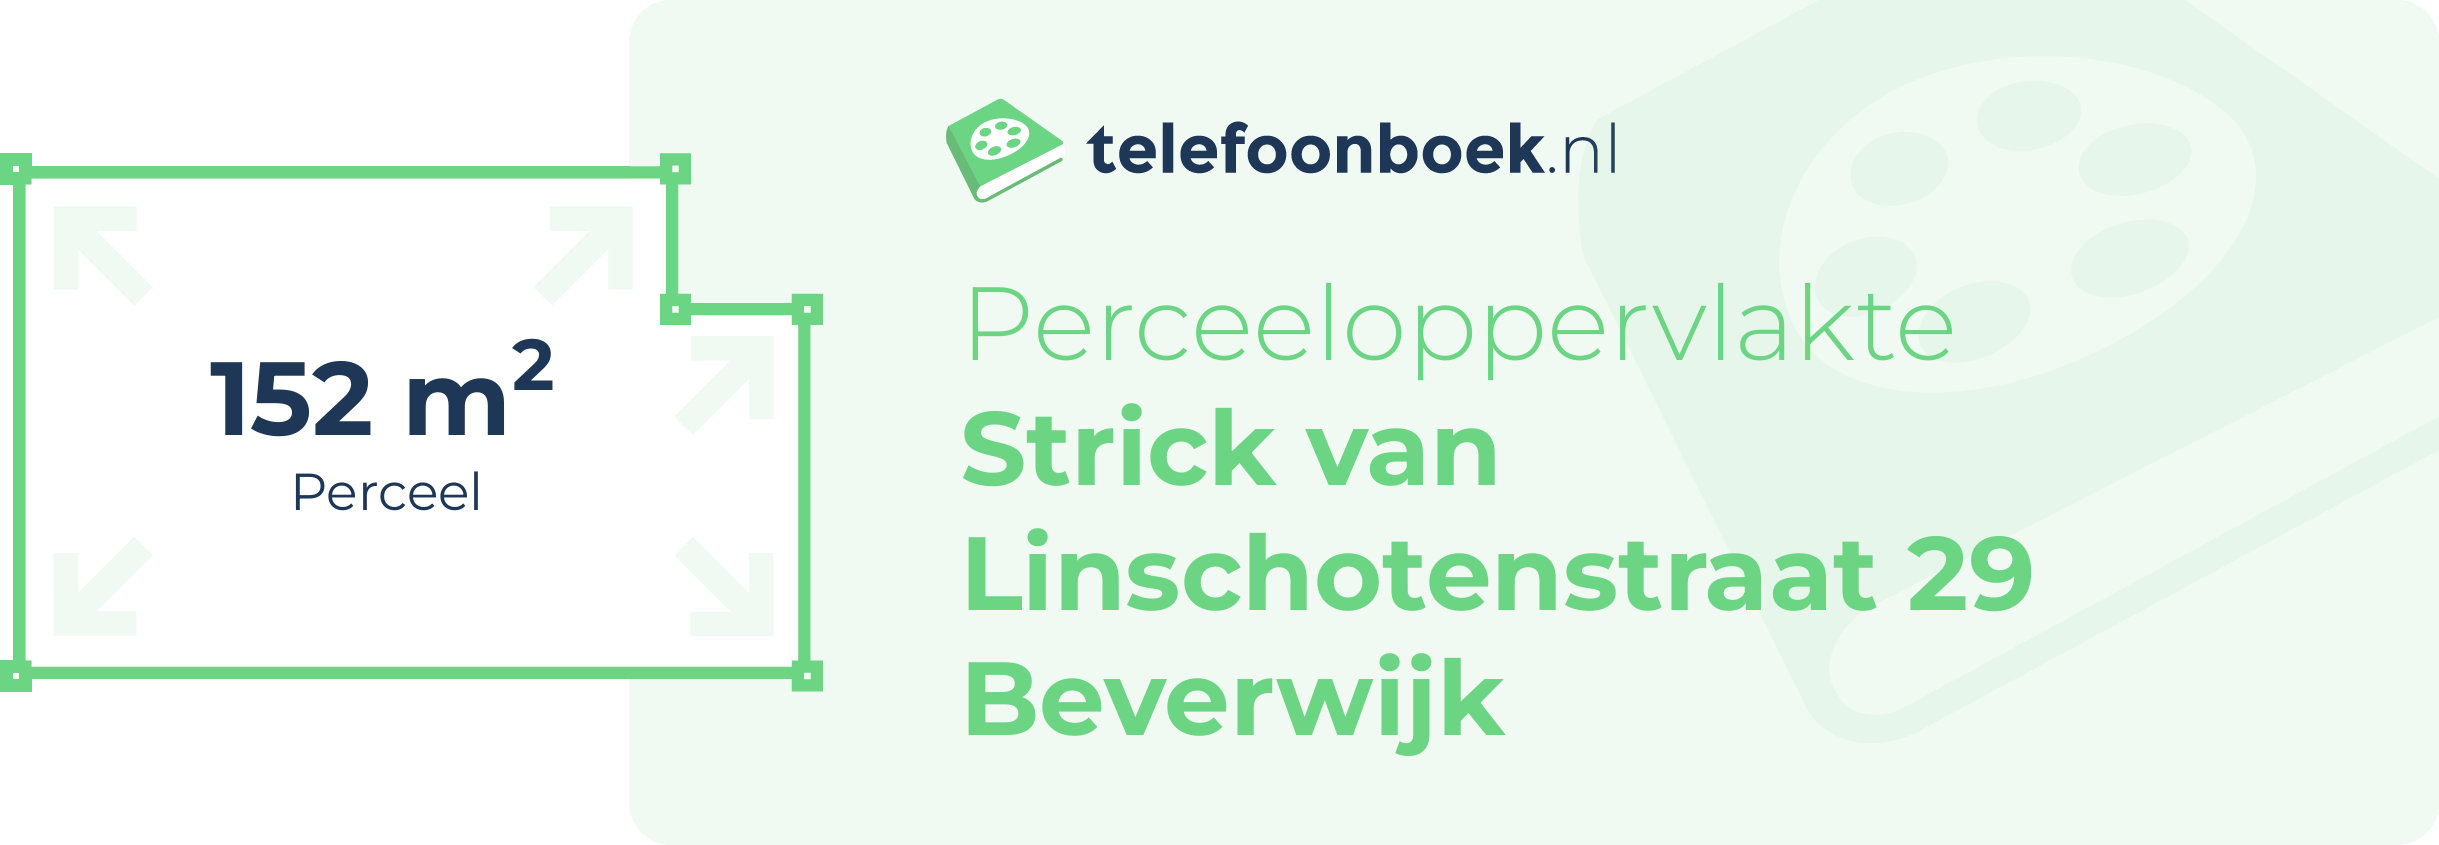 Perceeloppervlakte Strick Van Linschotenstraat 29 Beverwijk